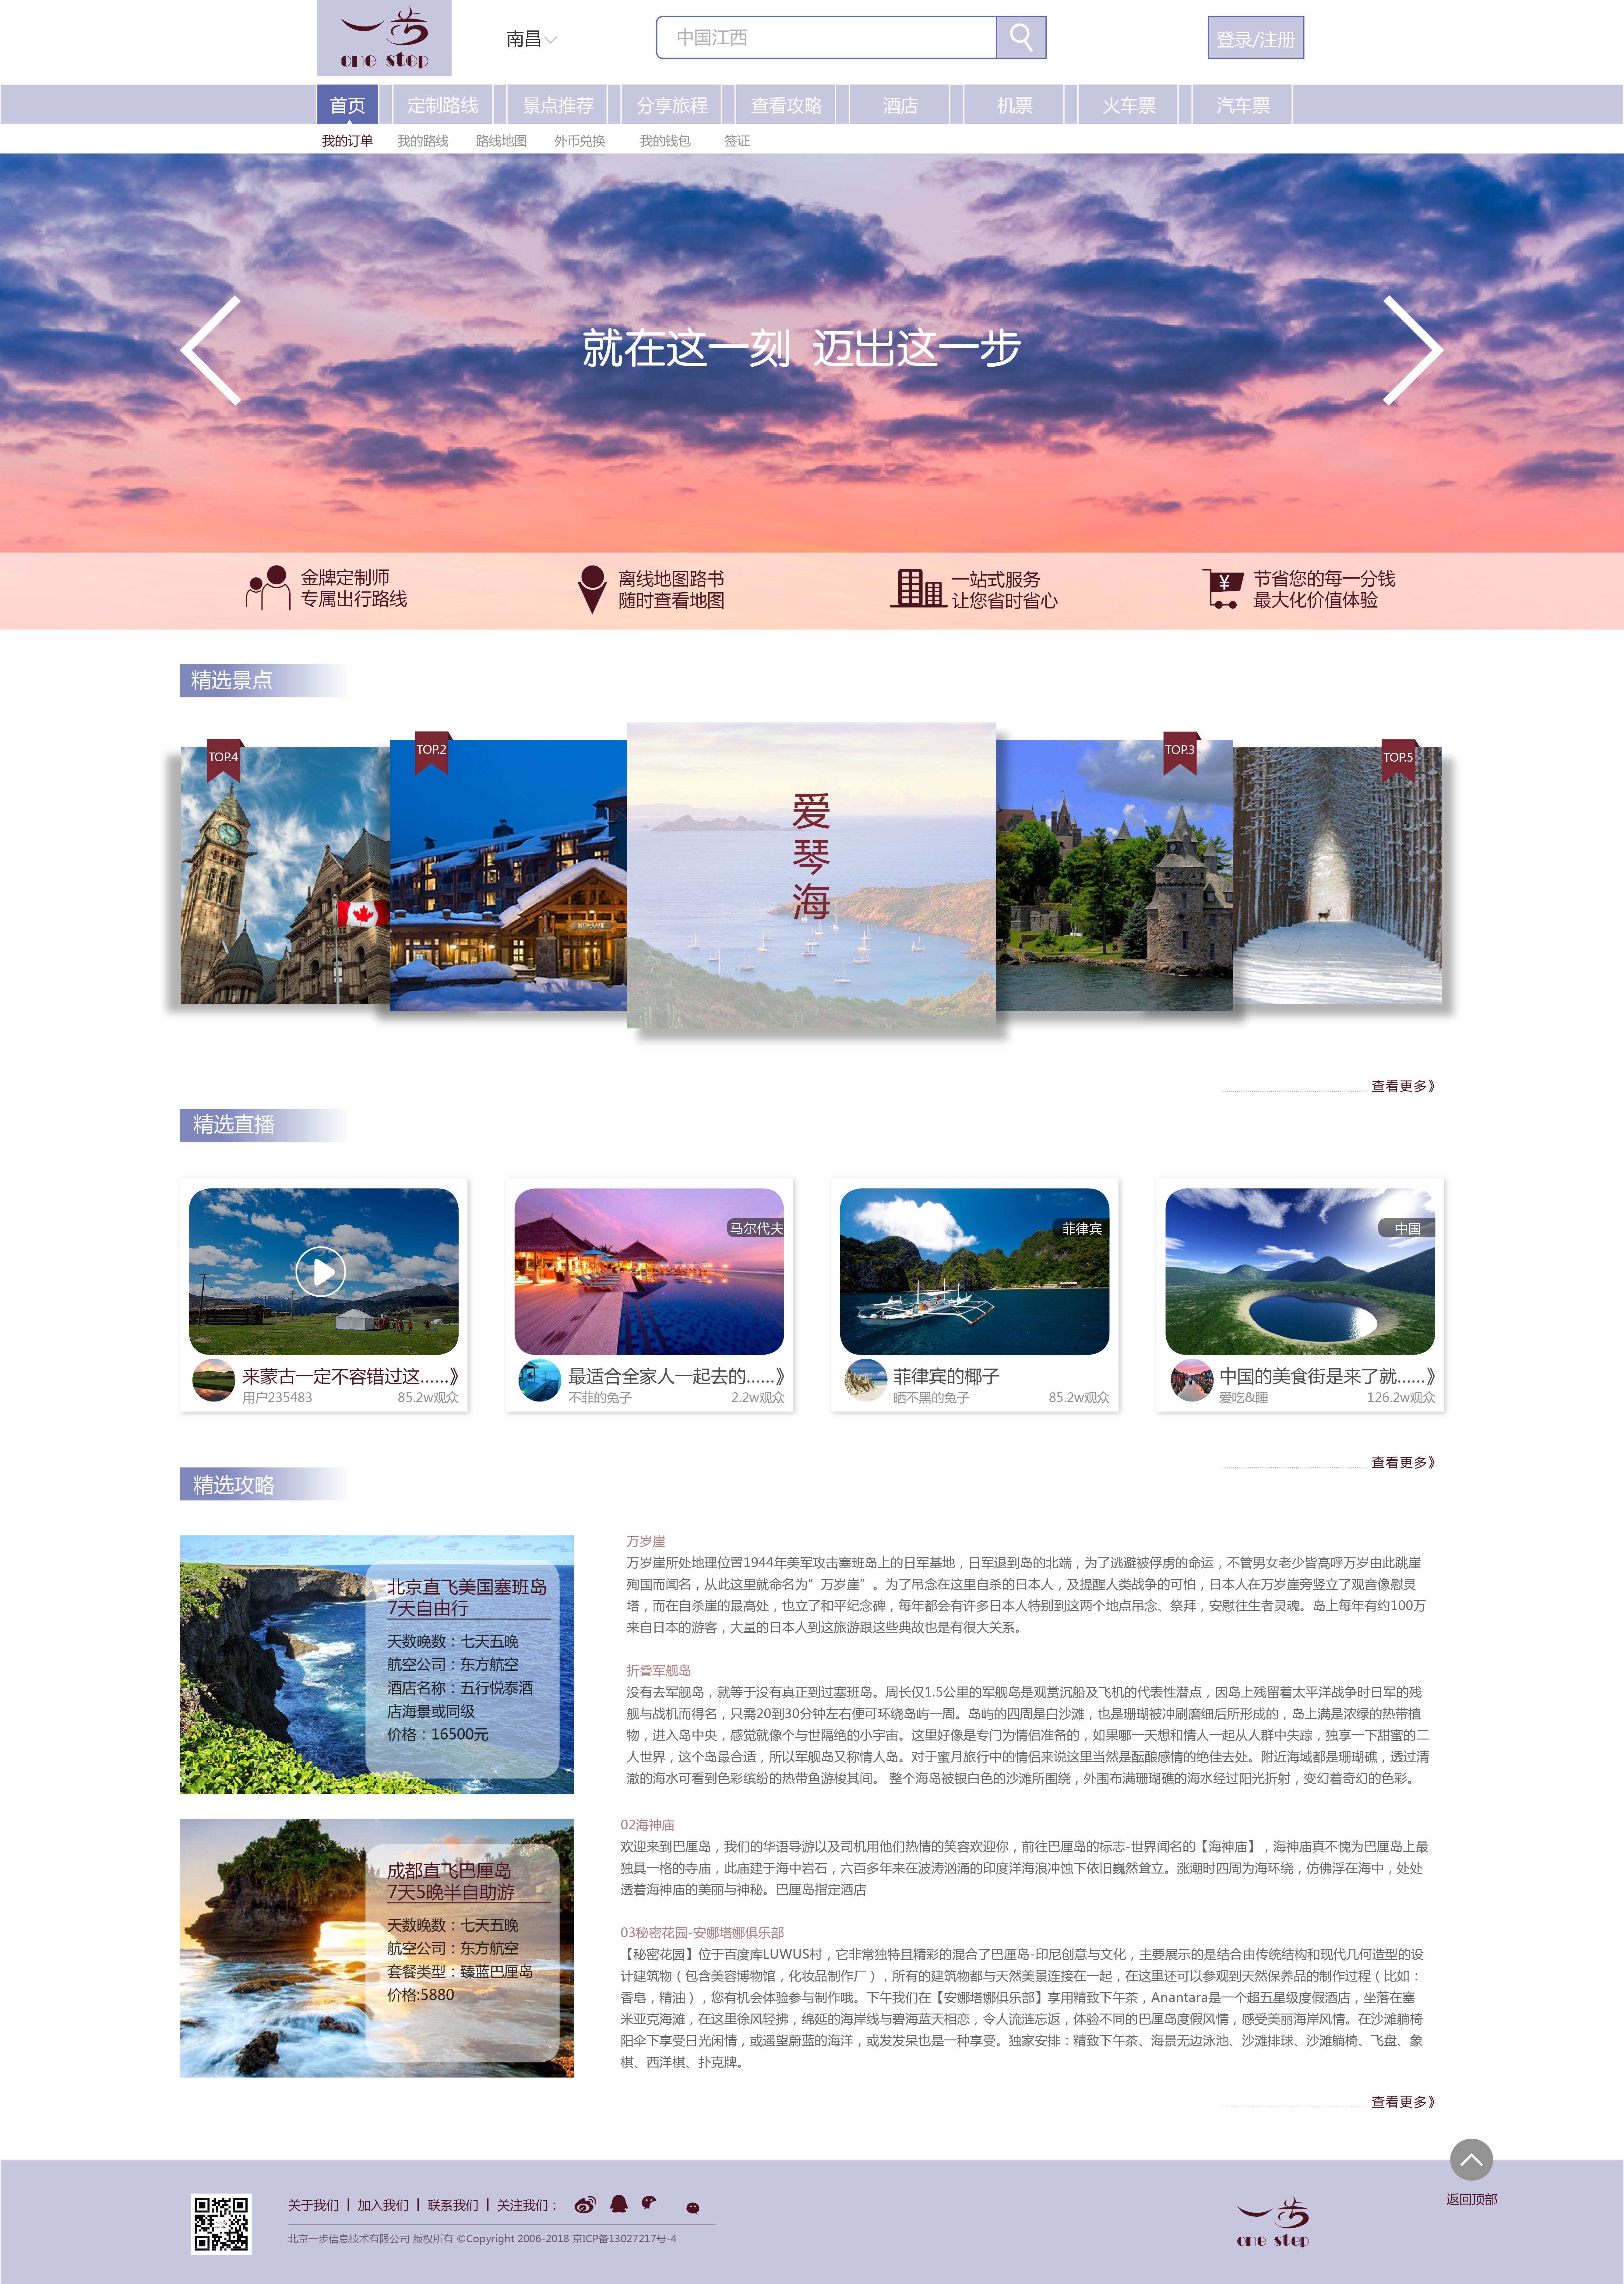 旅游网页设计布局图片